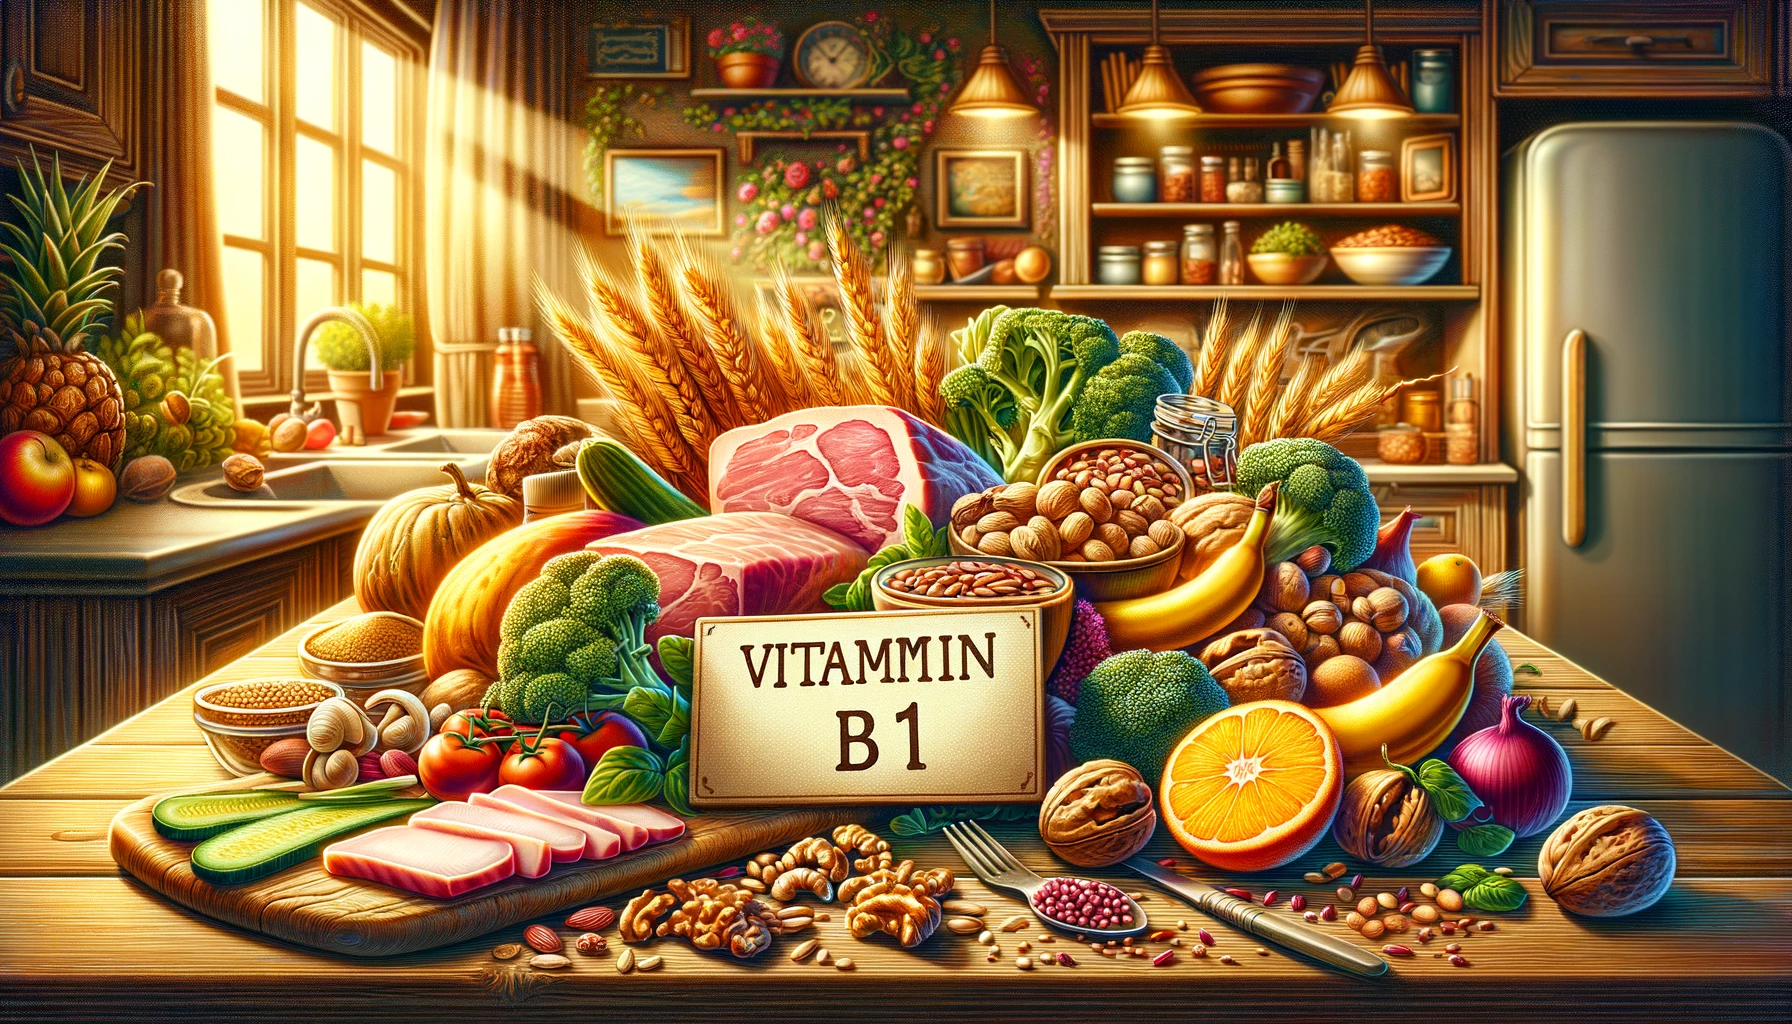 ビタミンB1を知るアイキャッチ